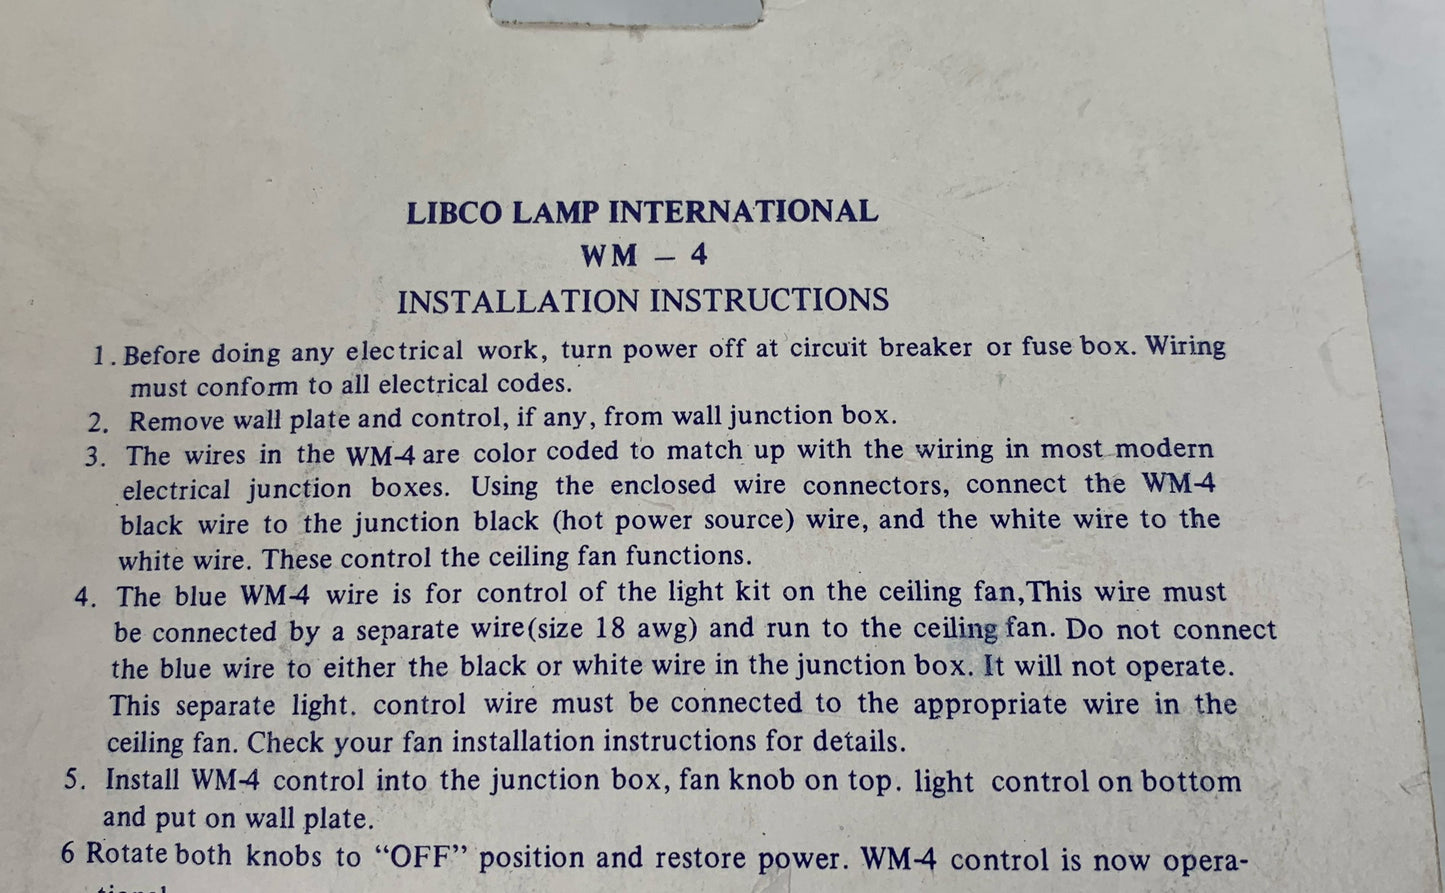 New LIBCO/LITEX Fan Accessories-Dual Fan And Light Kit WM-4 120V/AC